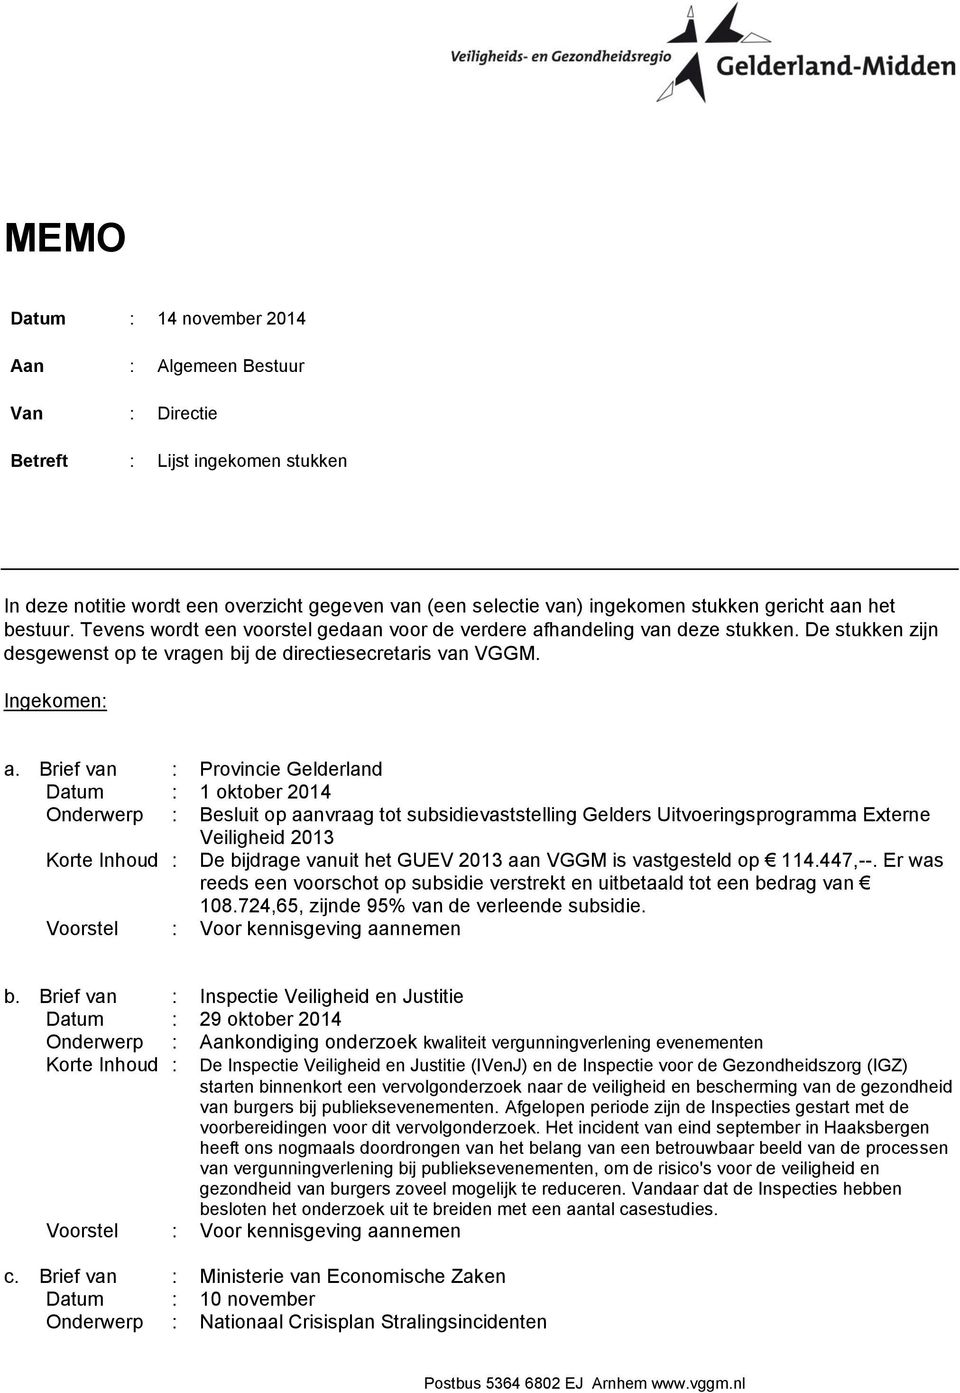 Brief van : Provincie Gelderland Datum : 1 oktober 2014 Onderwerp : Besluit op aanvraag tot subsidievaststelling Gelders Uitvoeringsprogramma Externe Veiligheid 2013 Korte Inhoud : De bijdrage vanuit